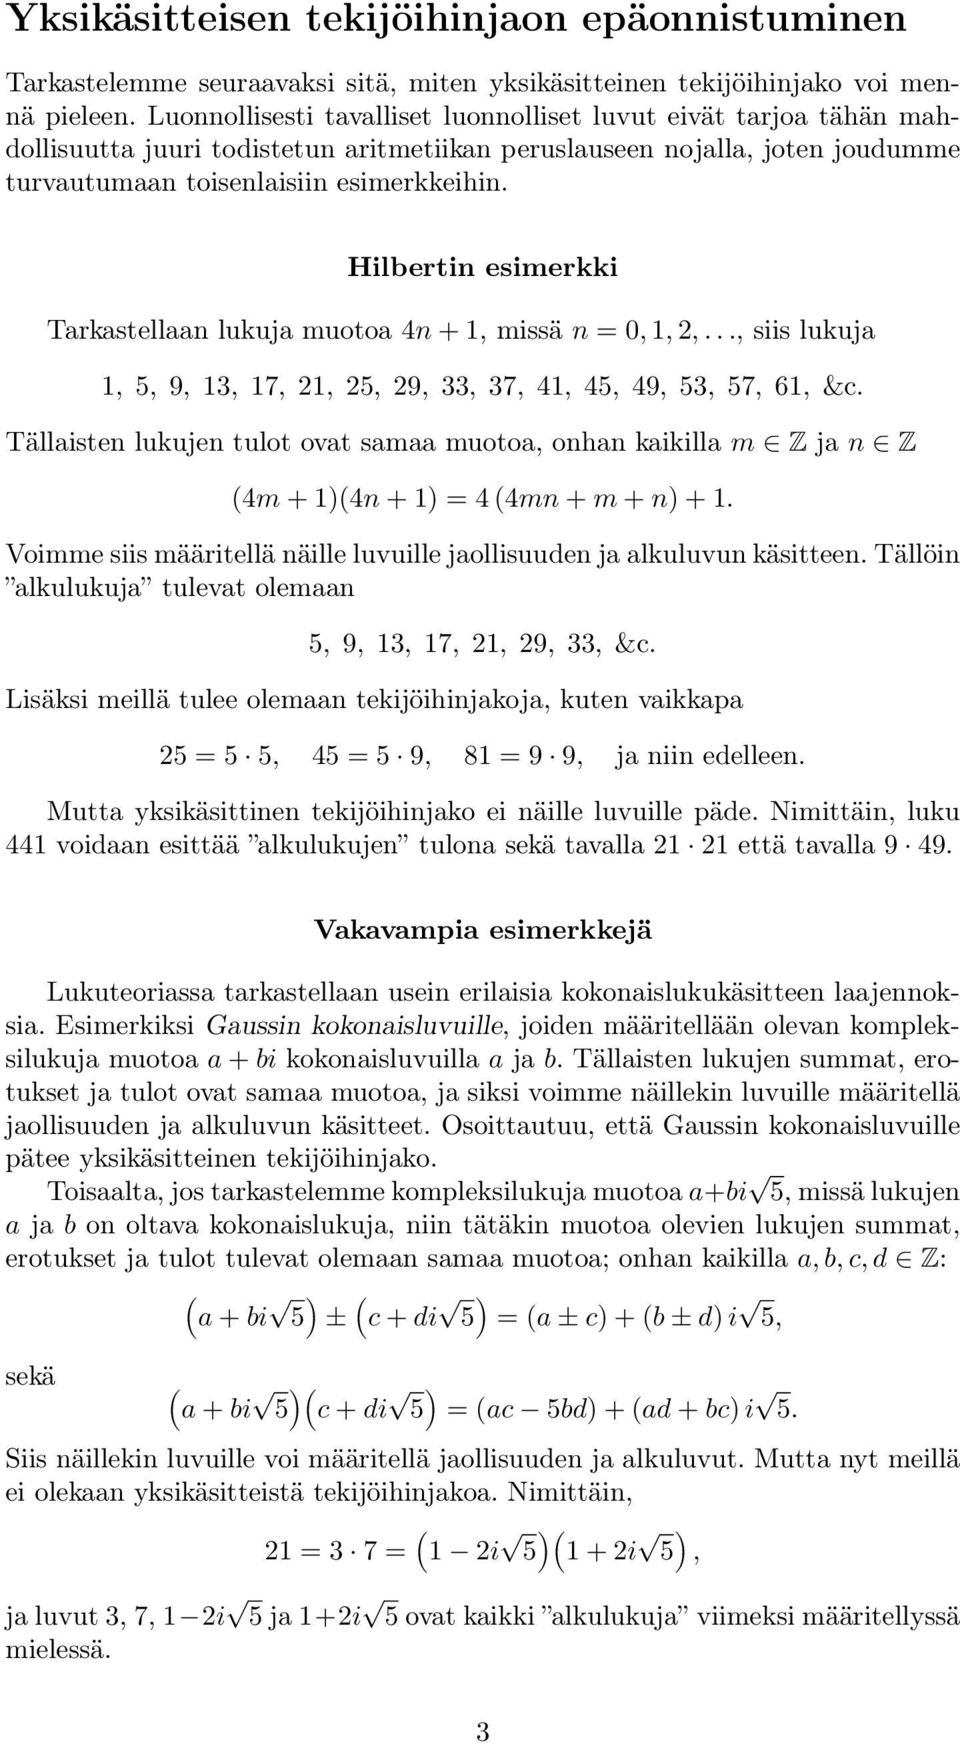 Hilbertin esimerkki Tarkastellaan lukuja muotoa 4n + 1, missä n = 0, 1,,..., siis lukuja 1, 5, 9, 13, 17, 1, 5, 9, 33, 37, 41, 45, 49, 53, 57, 61, &c.